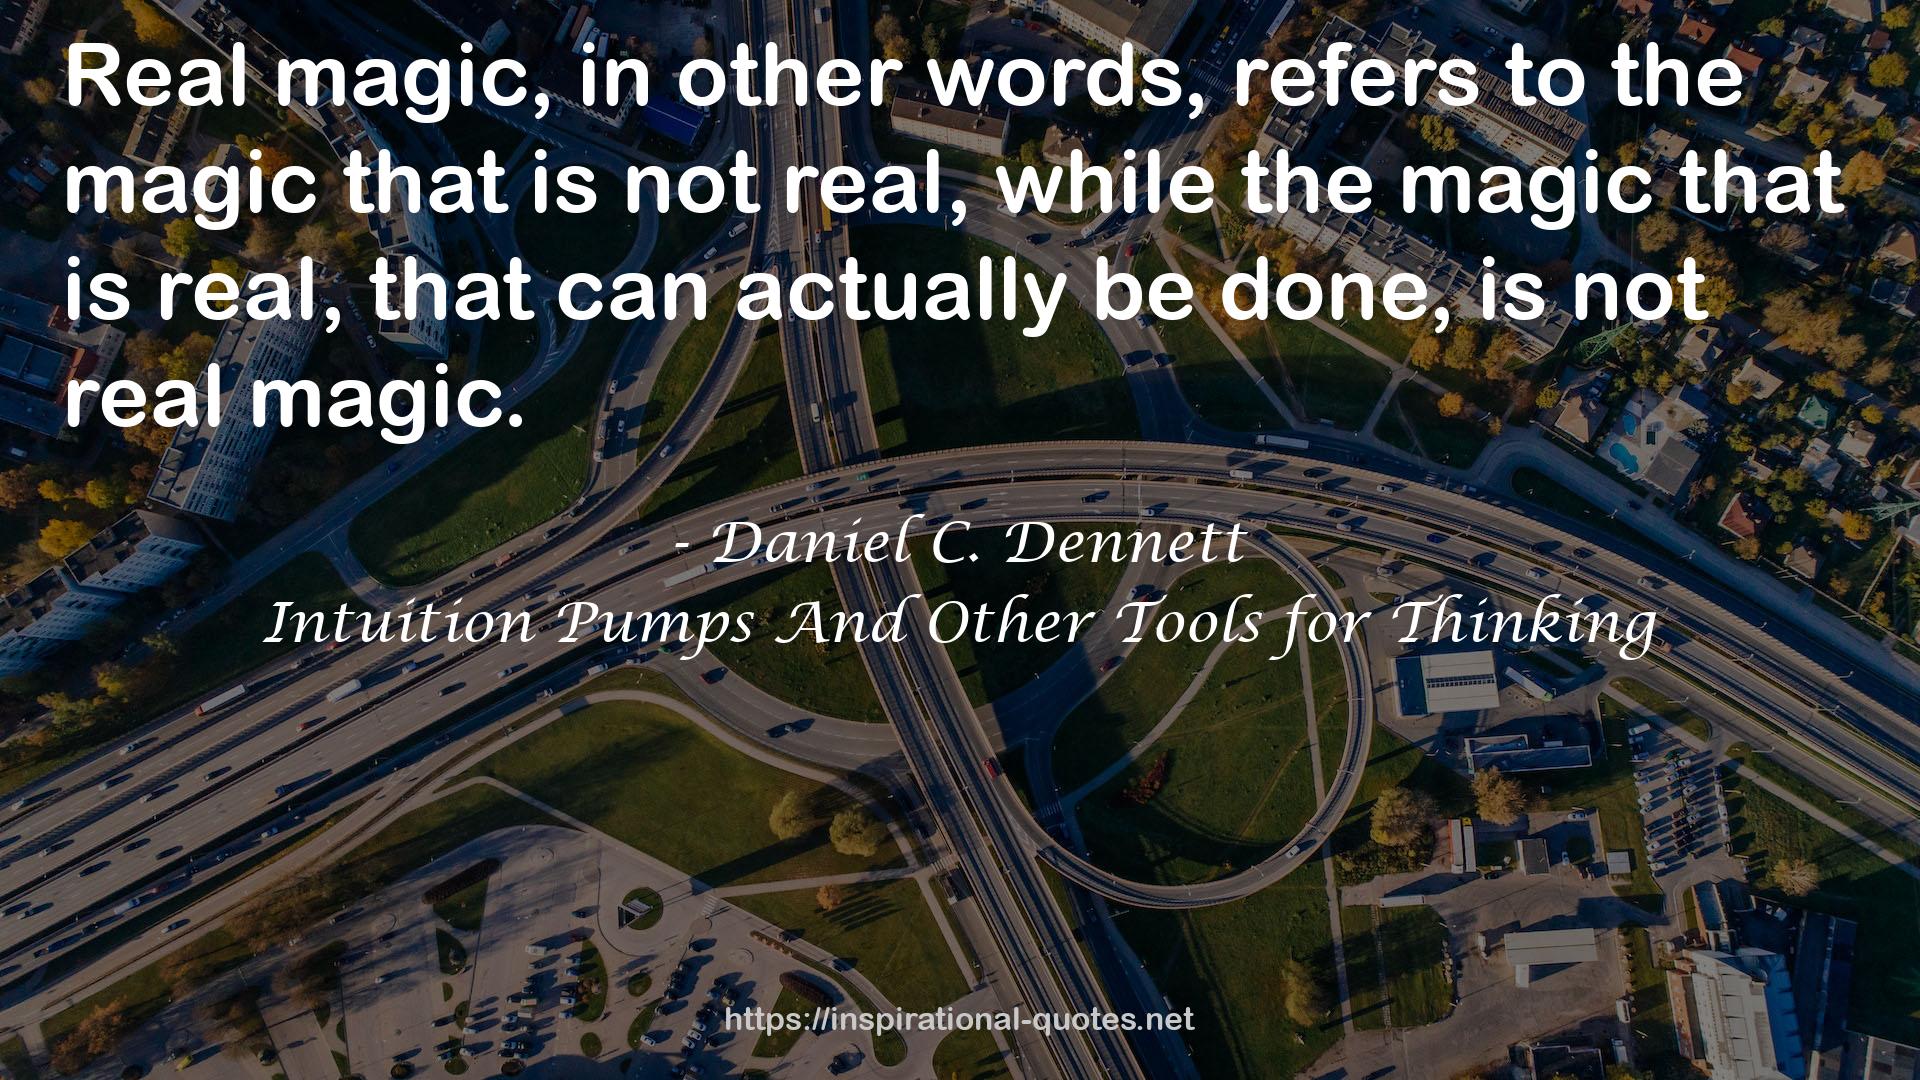 Daniel C. Dennett QUOTES